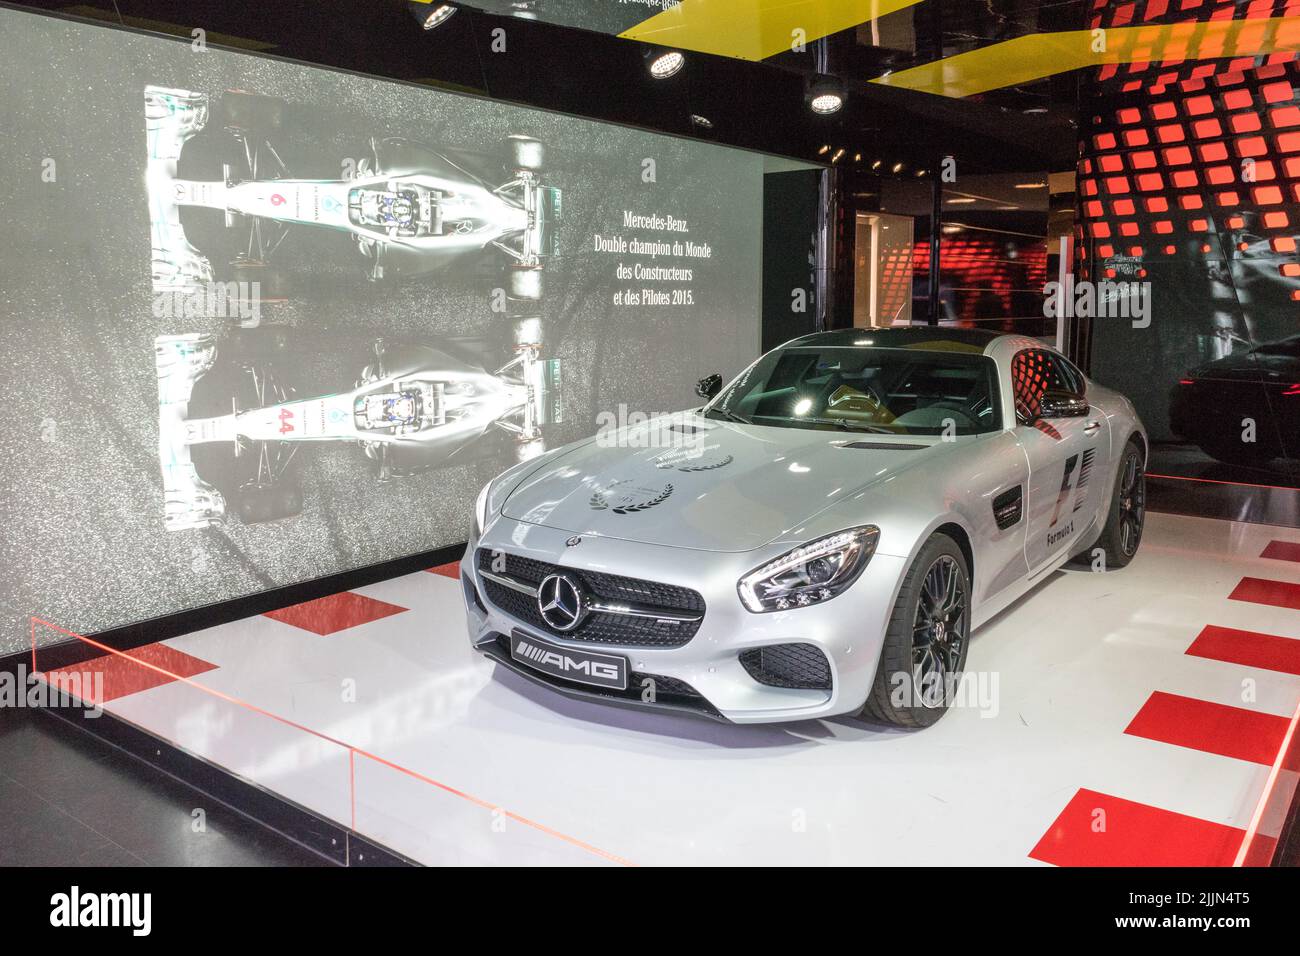 La voiture de sport Daimler Chrysler Mercedes Benz à côté d'un écran. Banque D'Images